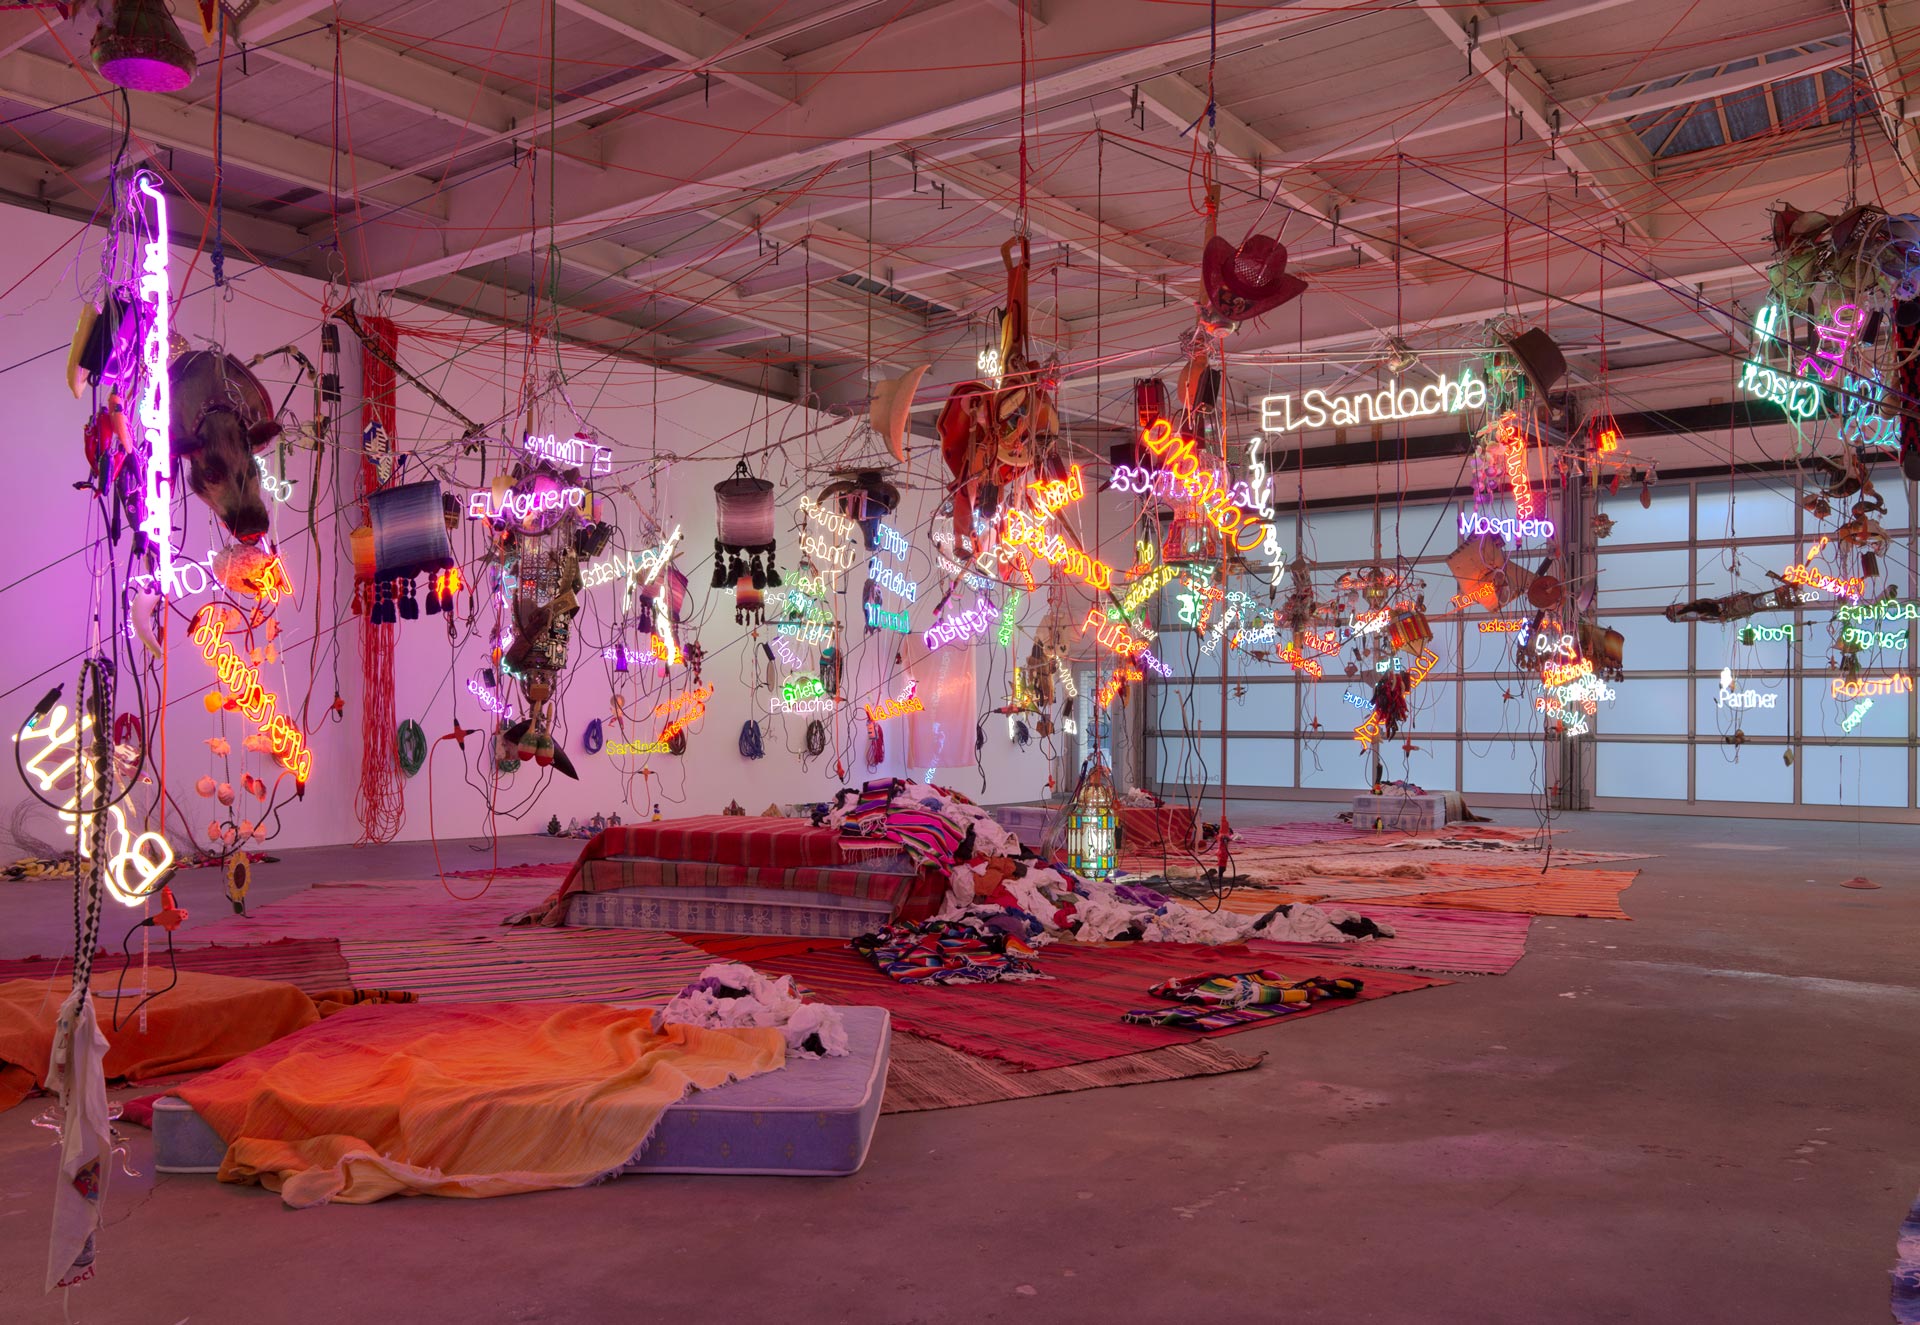 Installation view of the exhibition, Jason Rhoades: Tijuanatanjierchandelier, at David Zwirner in New York, dated 2019.